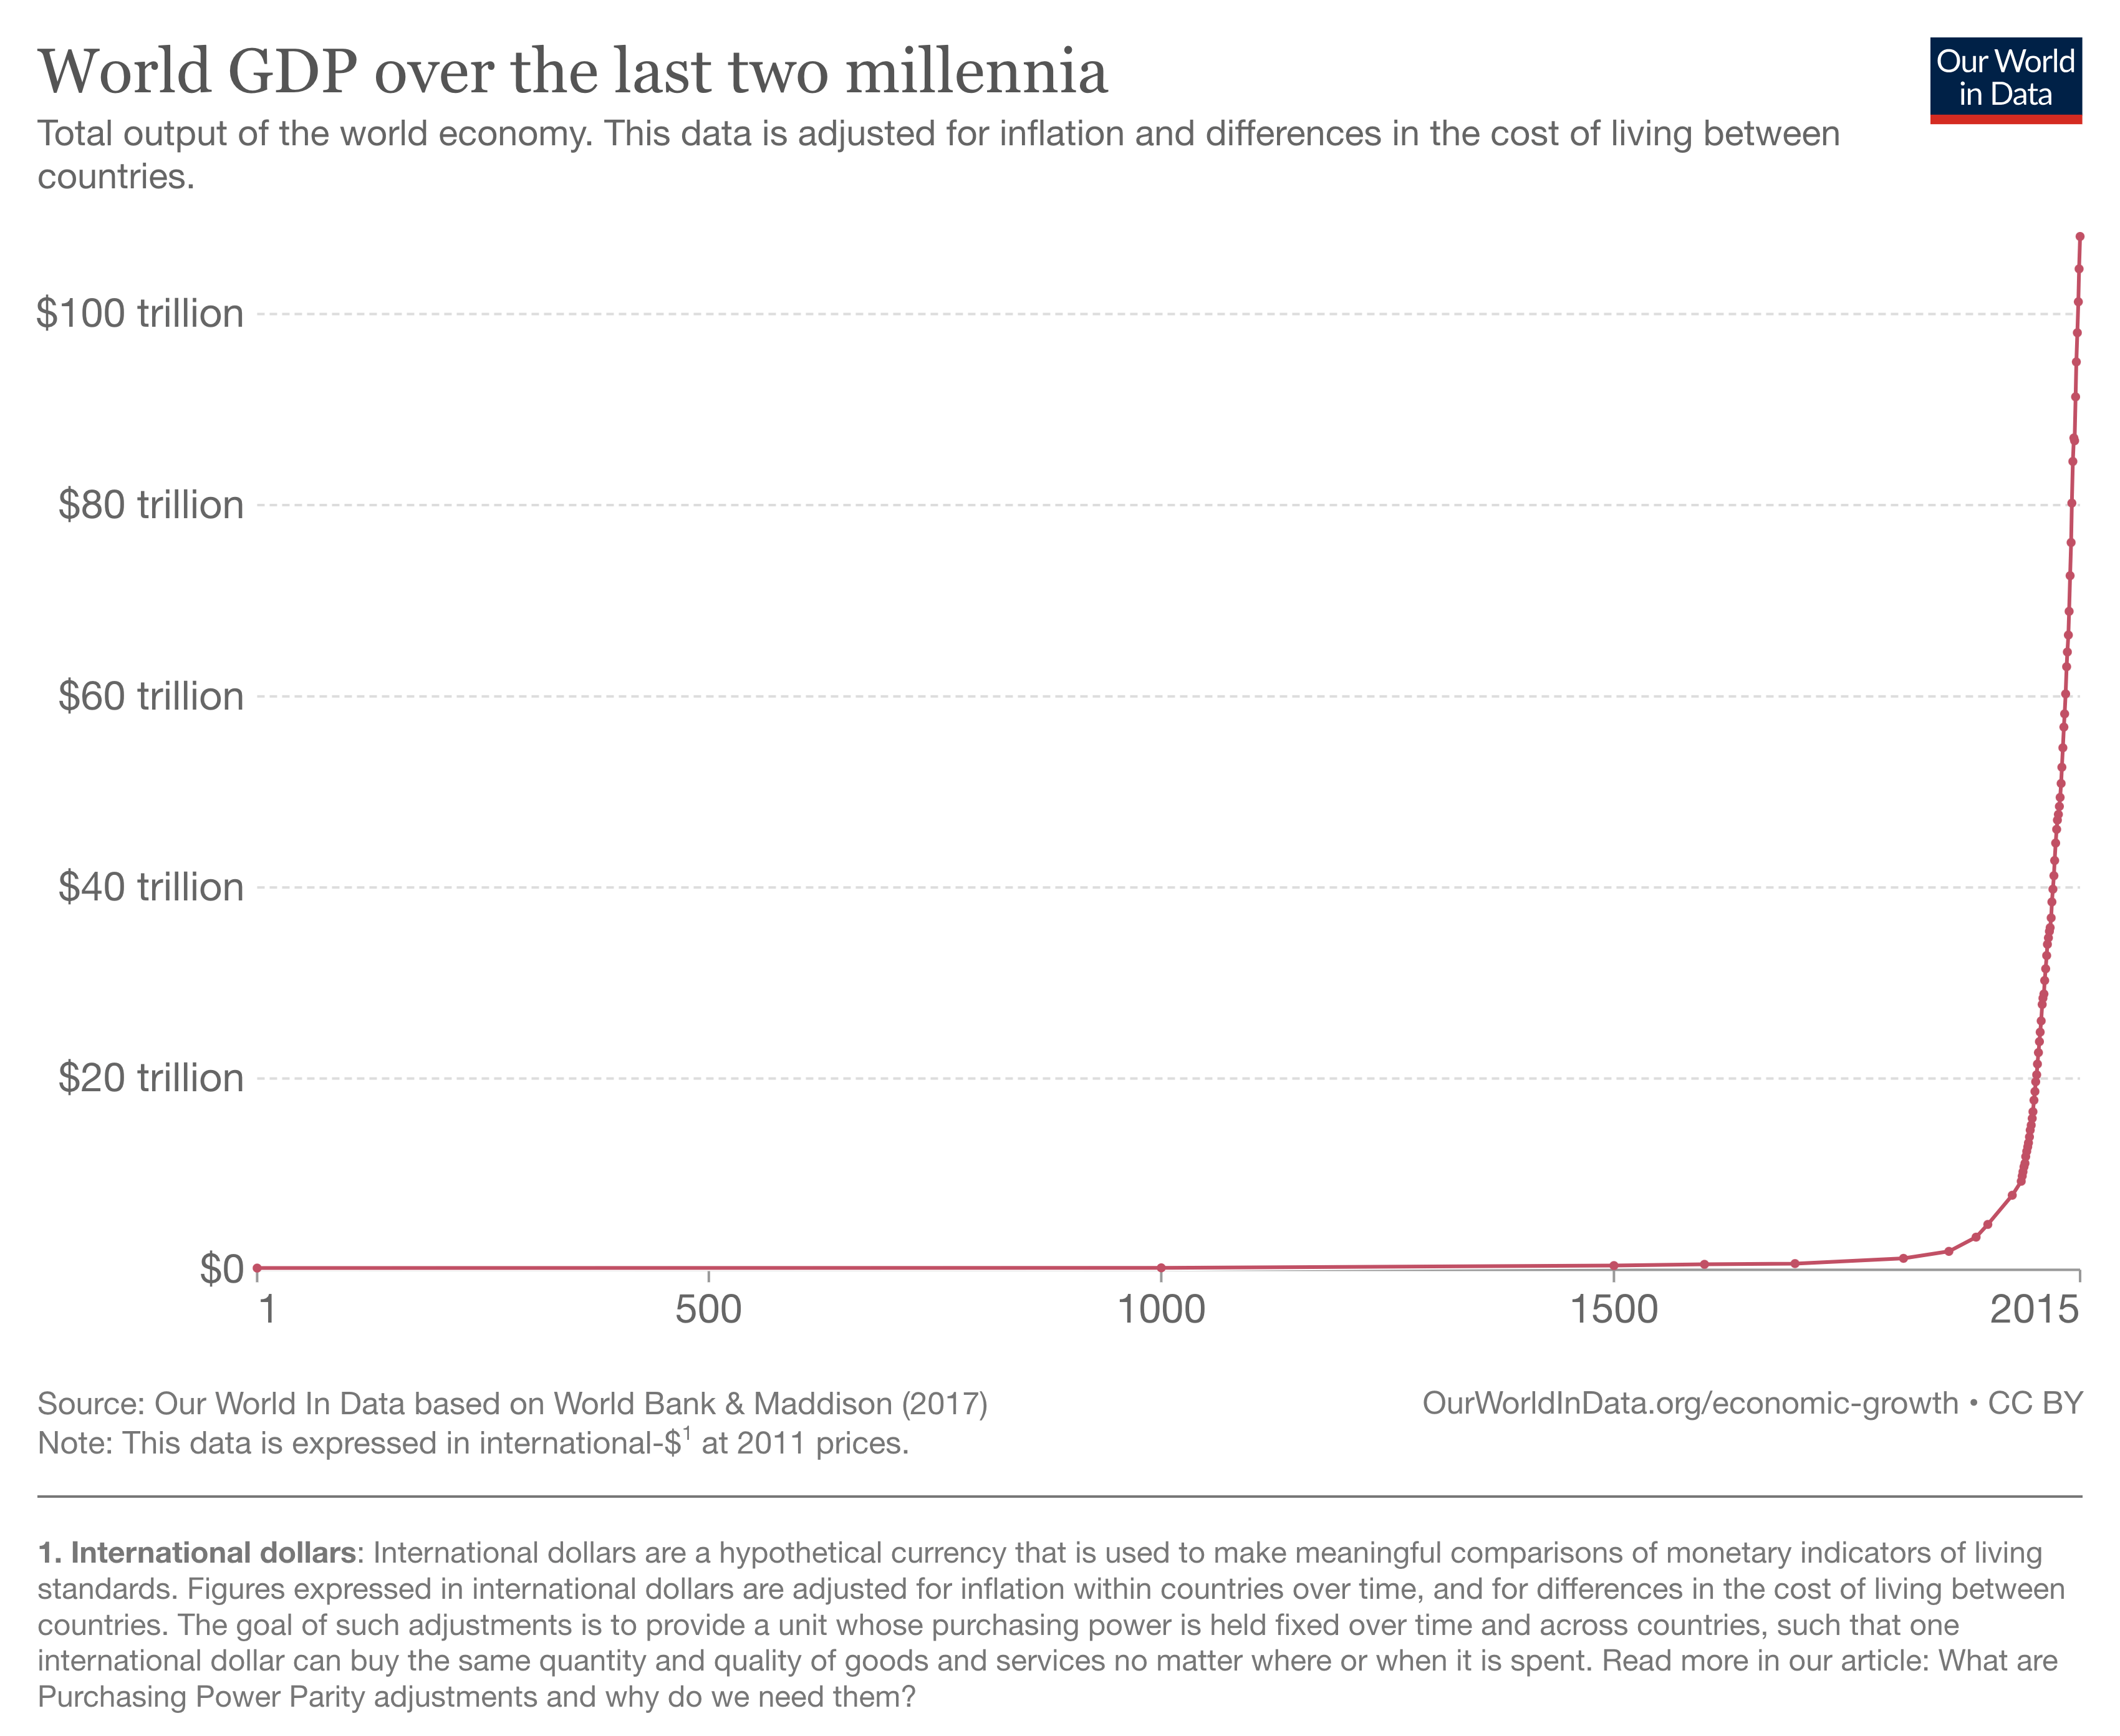 PIL mondiale negli ultimi due millenni